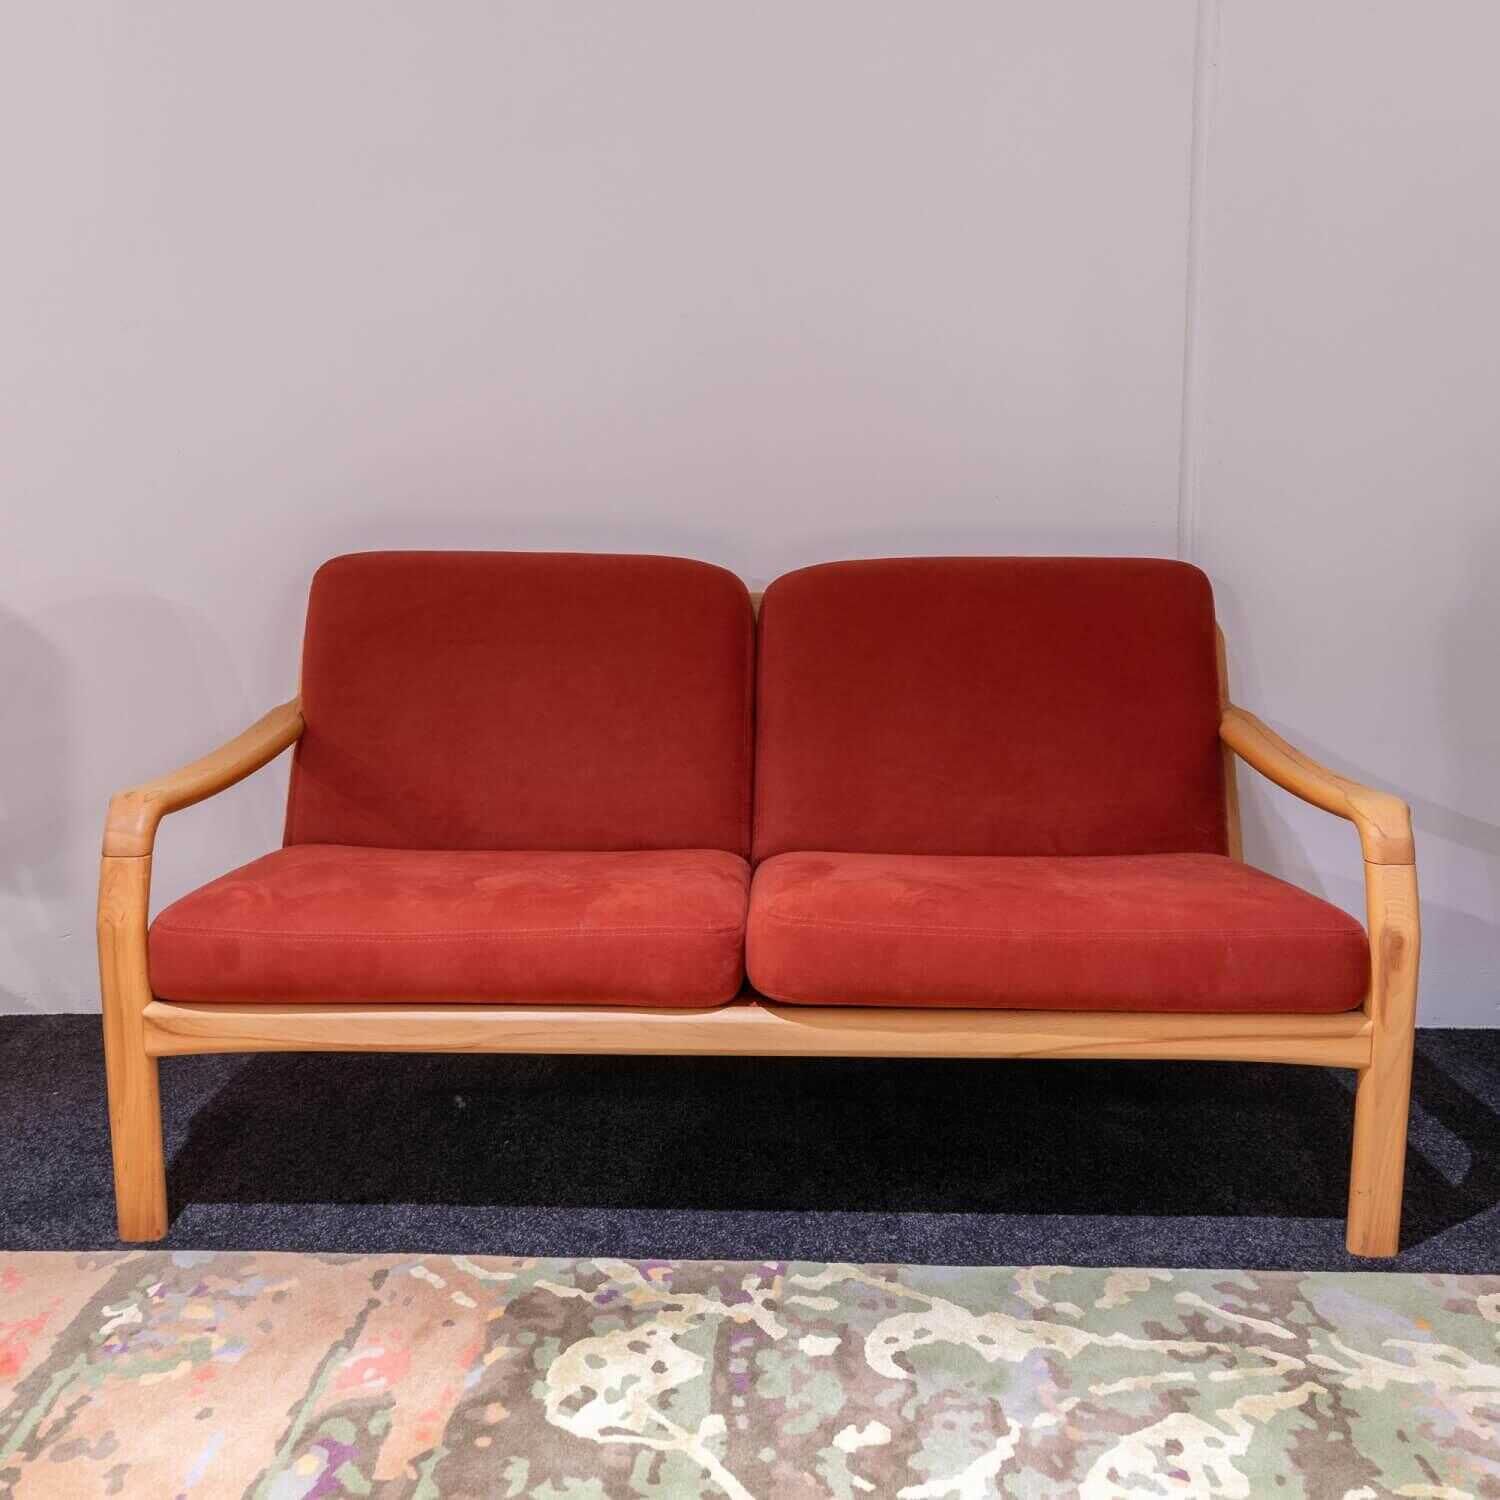 Sofa DY 1260 2,5-Sitzer Stoff Comfort 0028 Rot Kernbuche Geölt